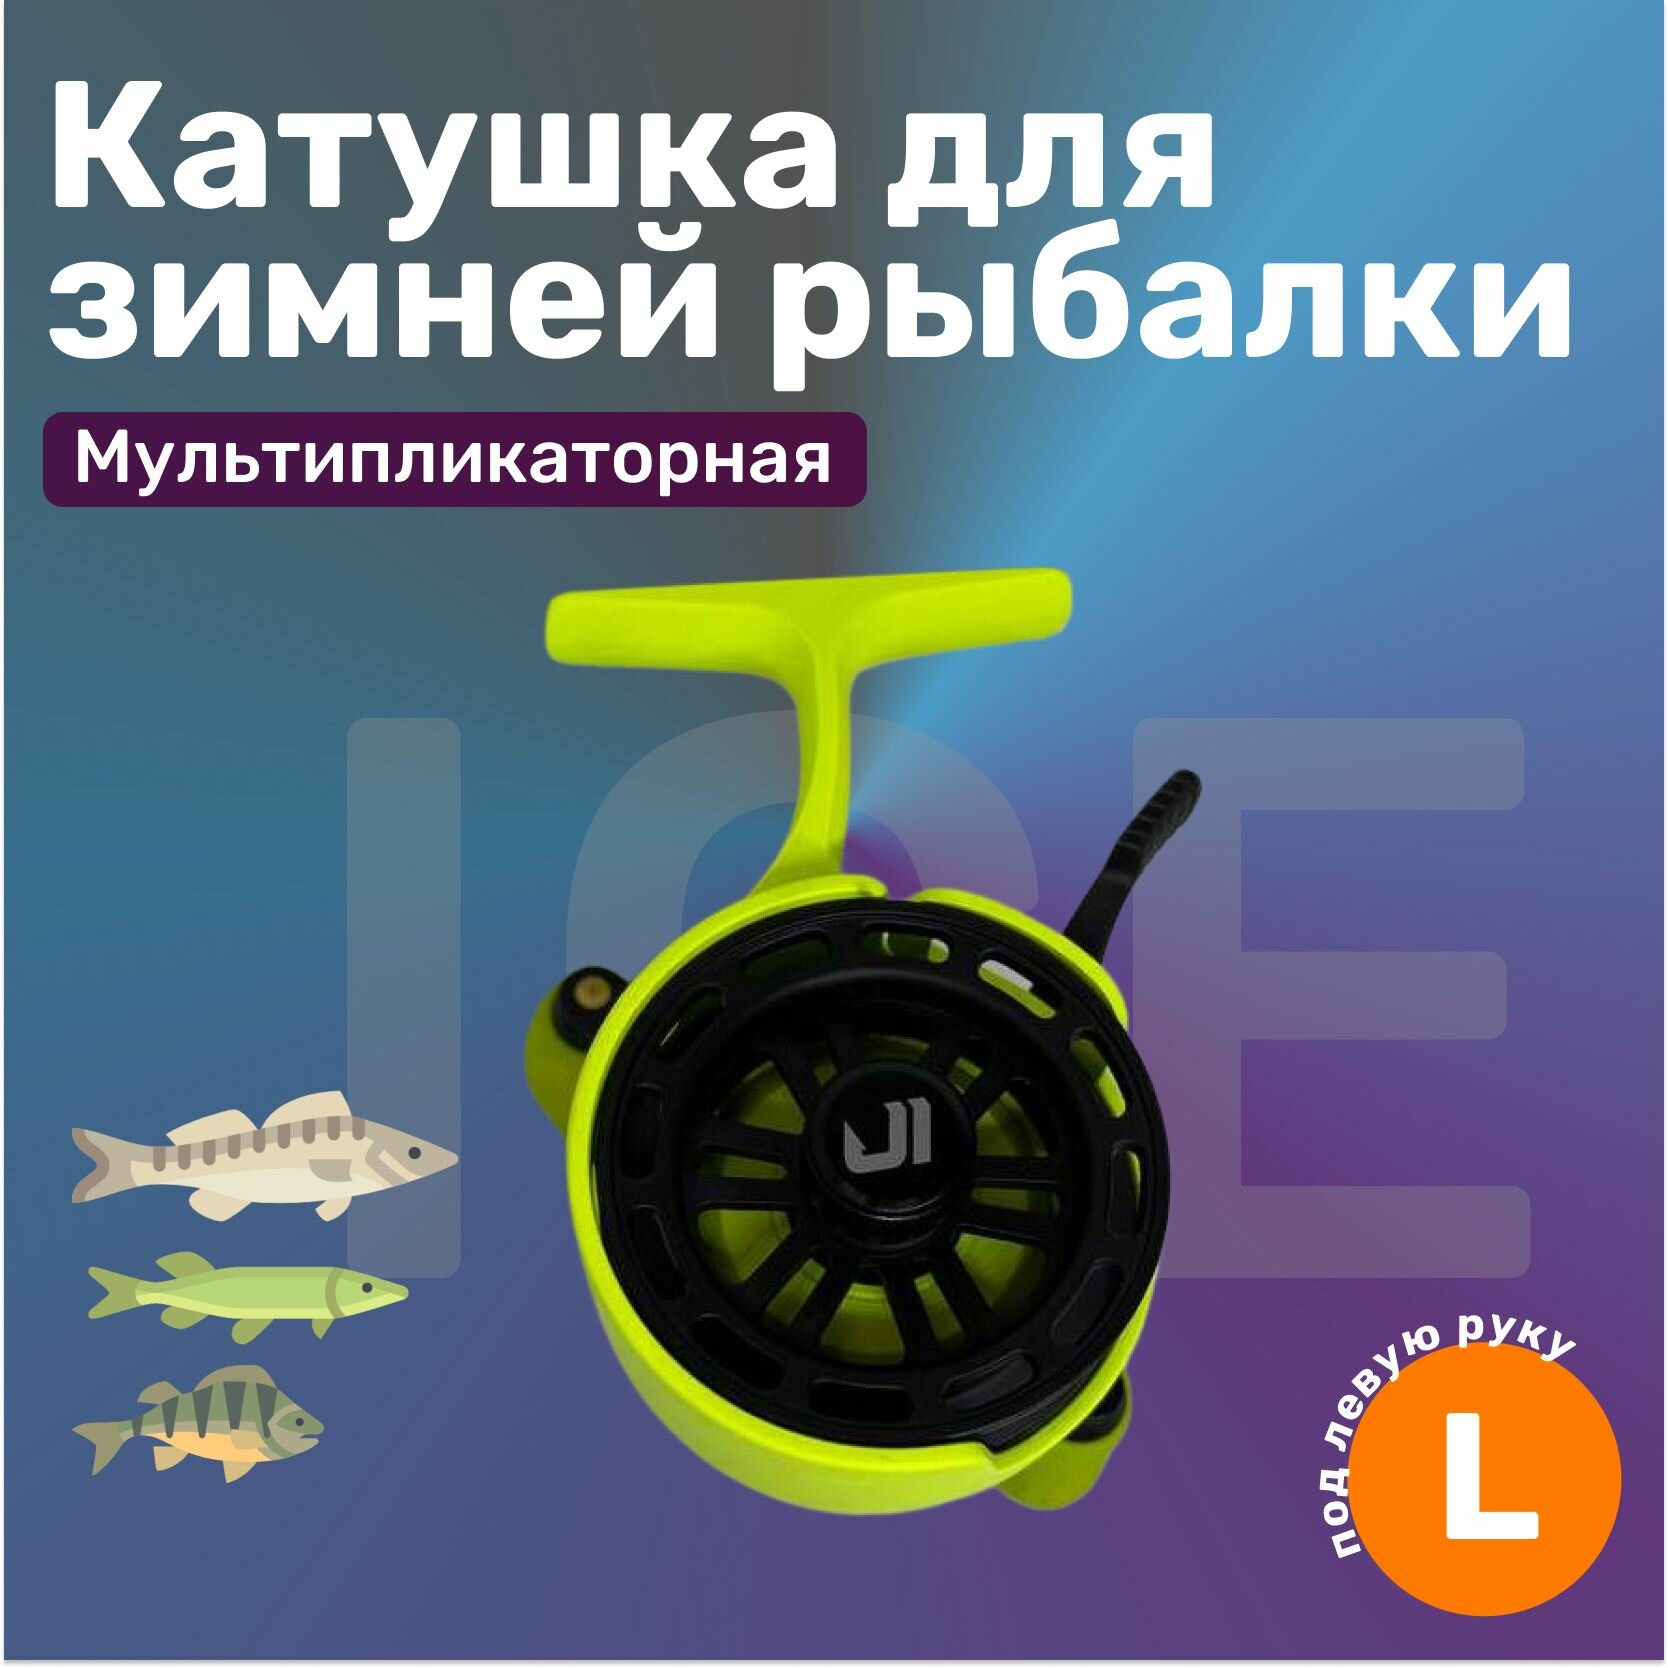 Катушка Jig It Team Dubna для зимней рыбалки мультипликаторная